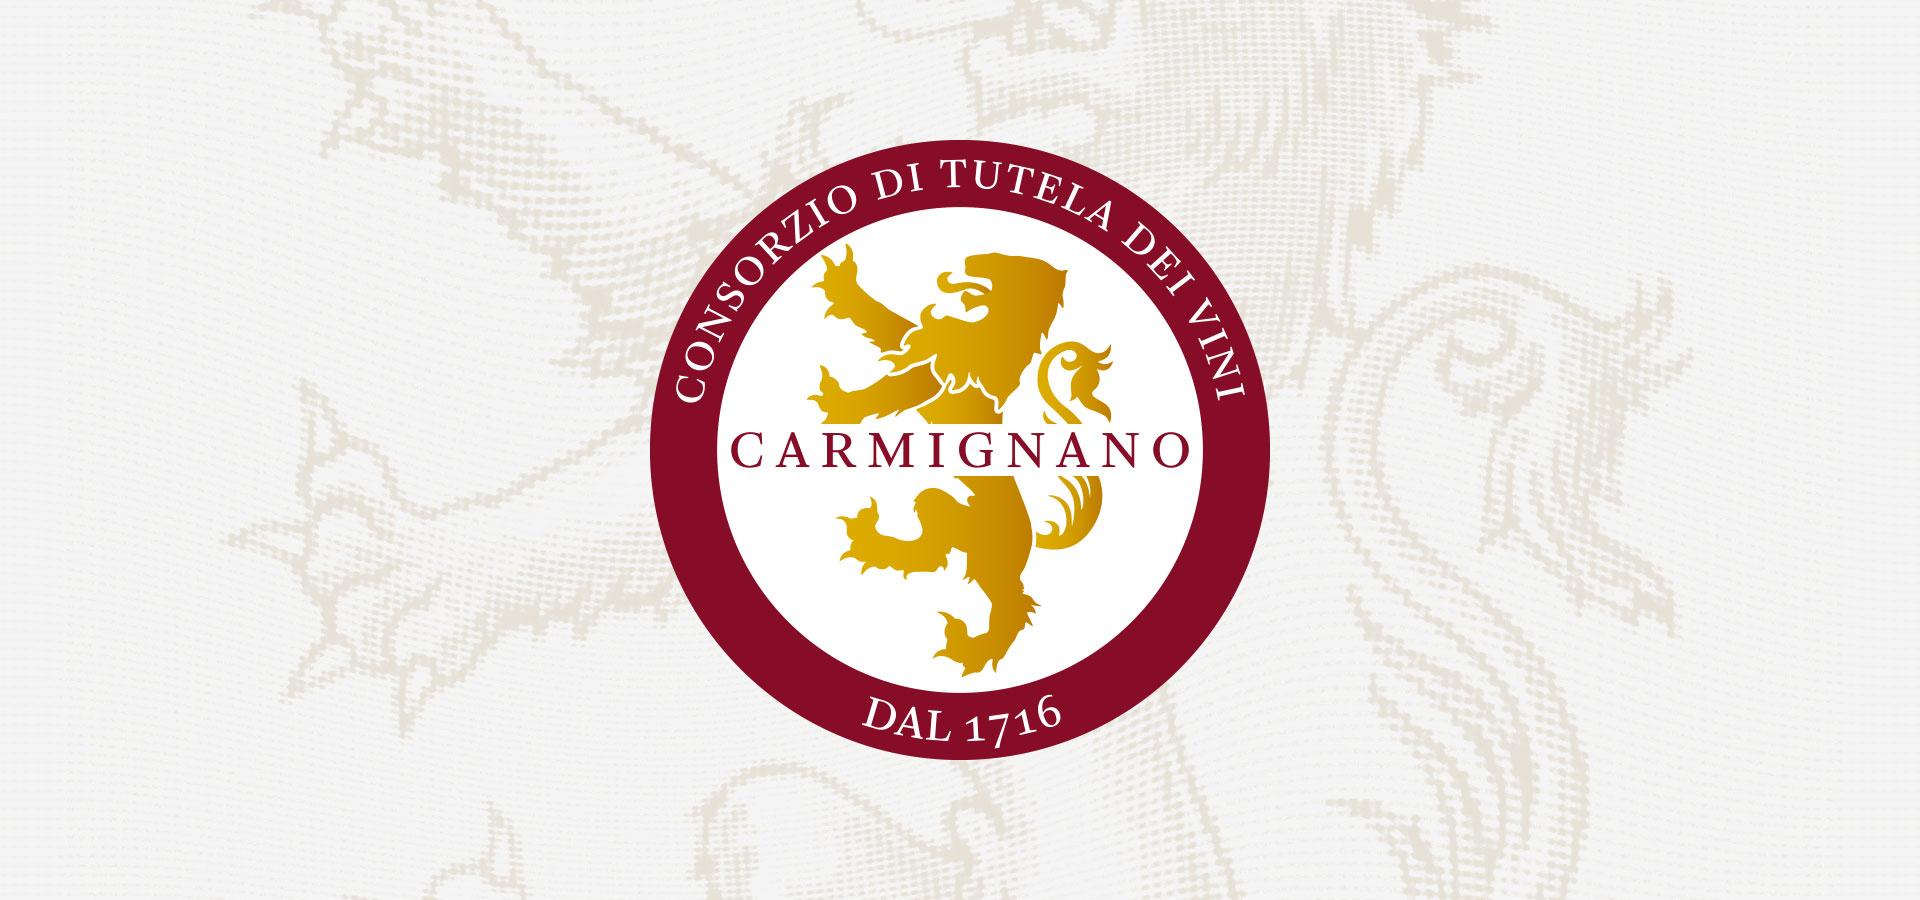 Logo del Consorzio di Tutela dei Vini di Carmignano, rosso e bianco dalla forma tonda con un leone d'oro stilizzato al centro